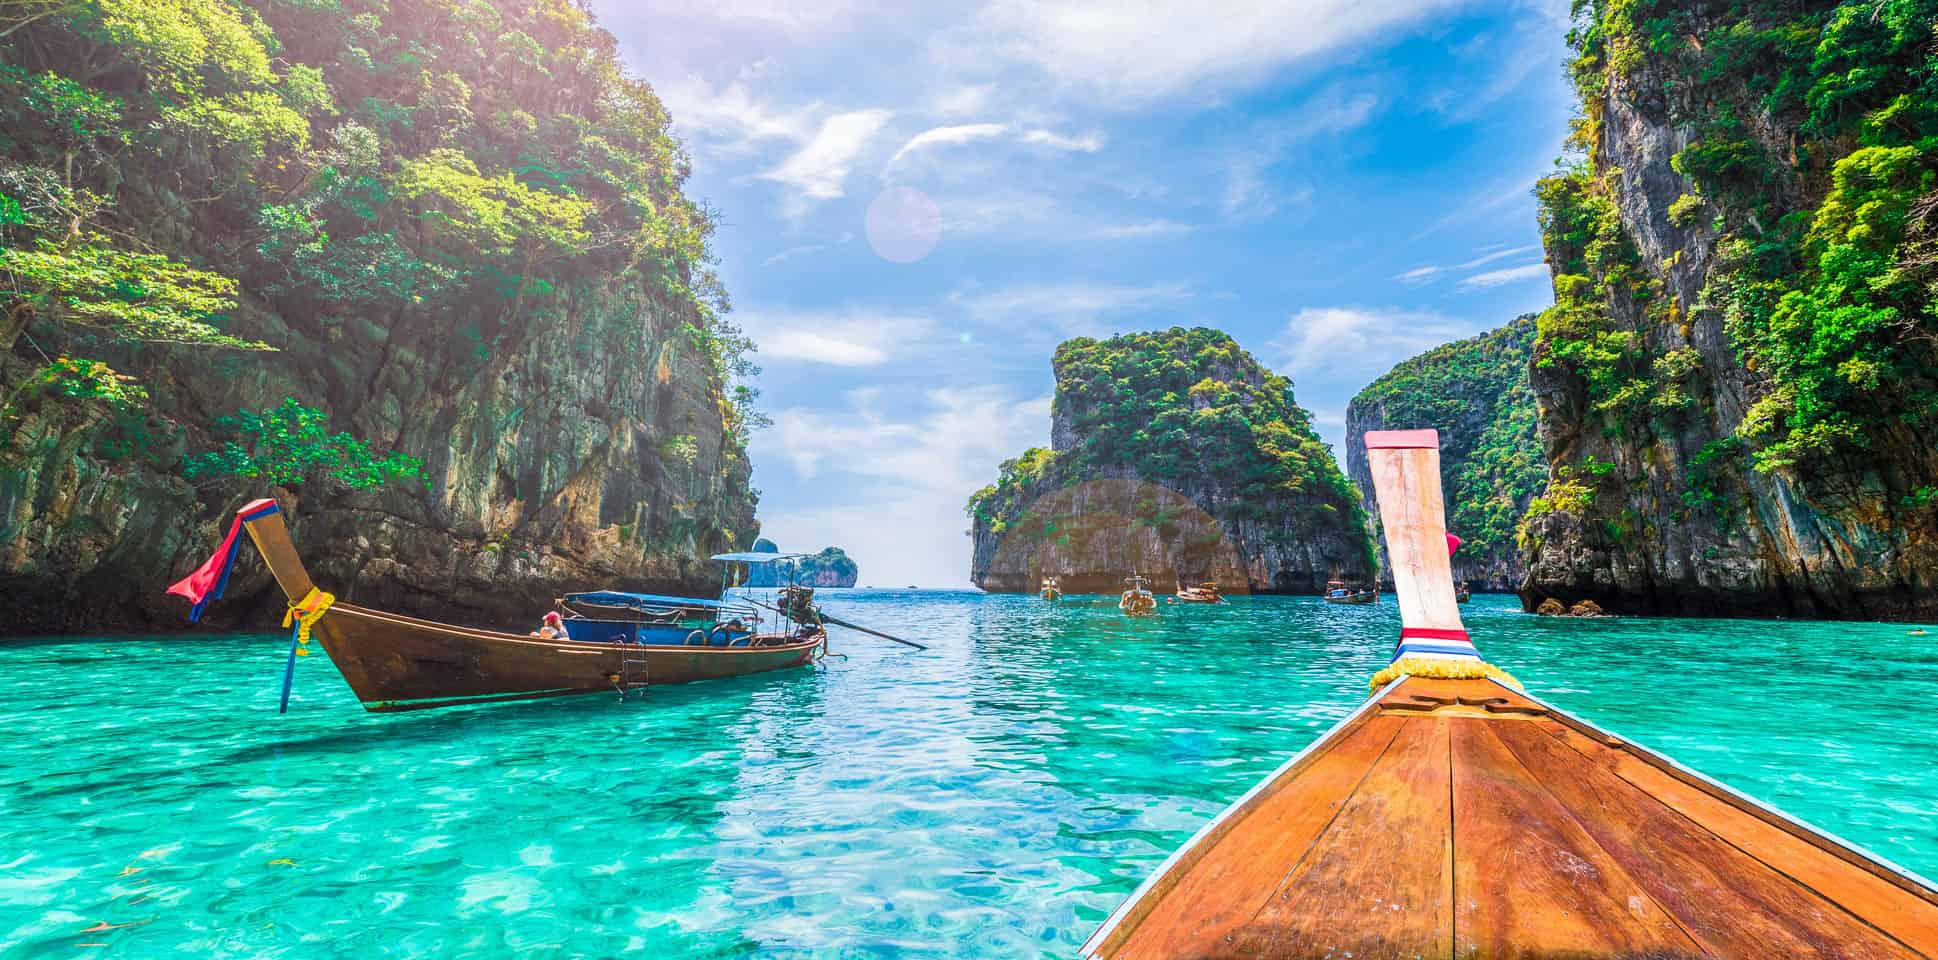 Turistas estrangeiros tem que pagar taxa de R$50 para entrar na Tailândia